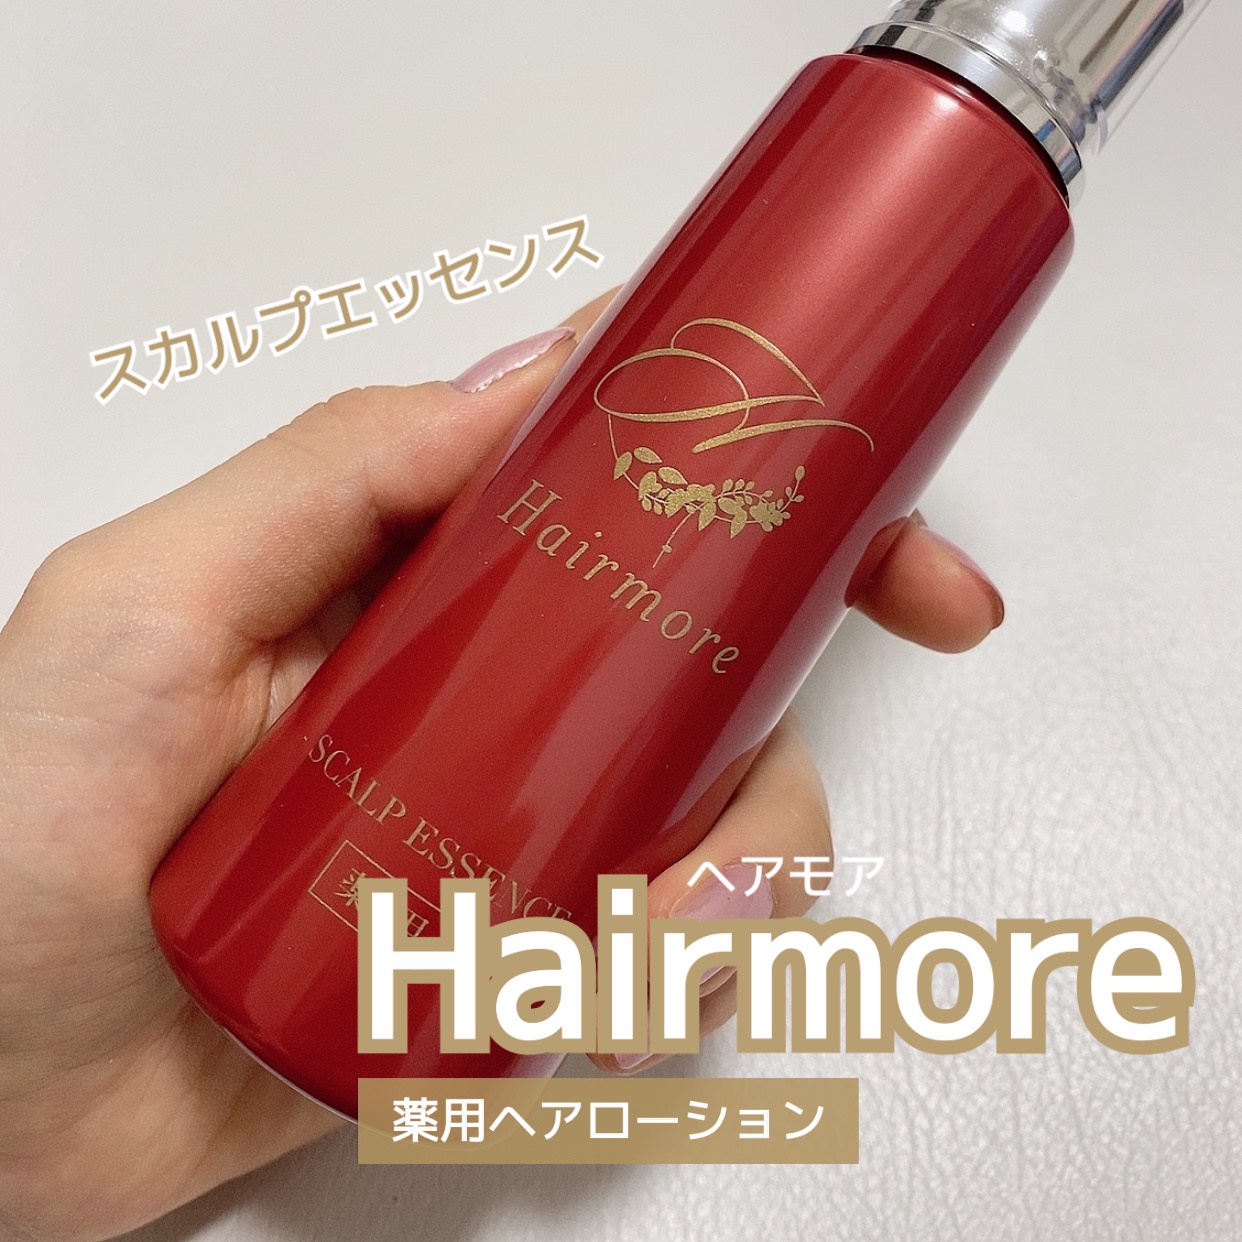 ヘアモア / 薬用ヘアモア-Hairmore-スカルプケアエッセンスの公式商品